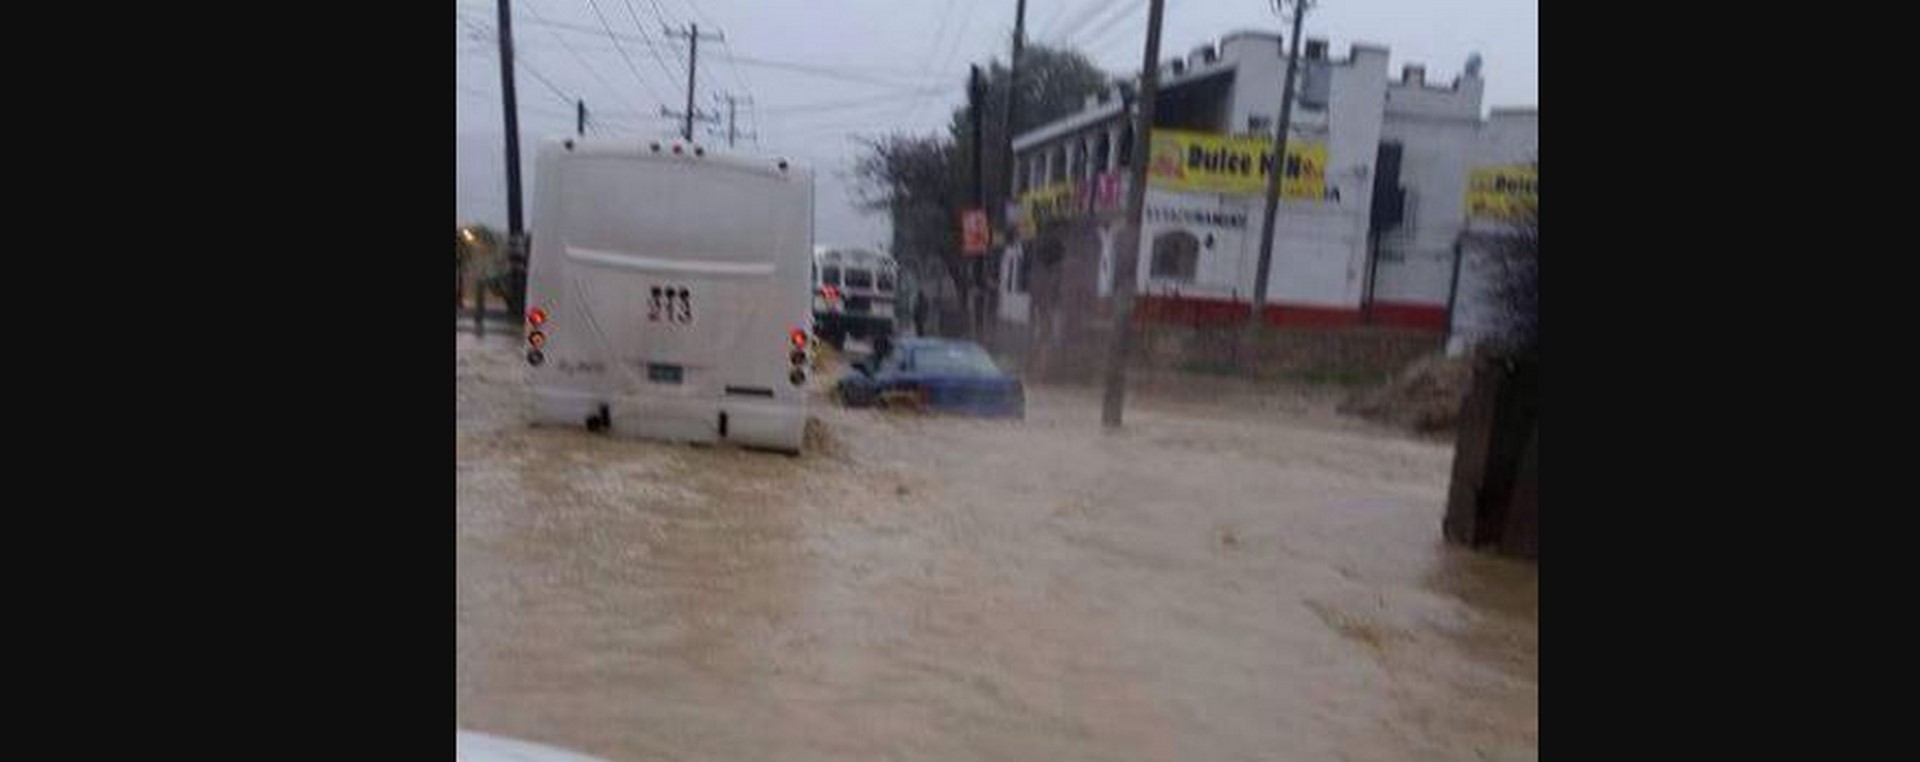 Se registran fuertes lluvias en Tijuana. (Twitter @webcamsdemexico vía @jorge_luis490)